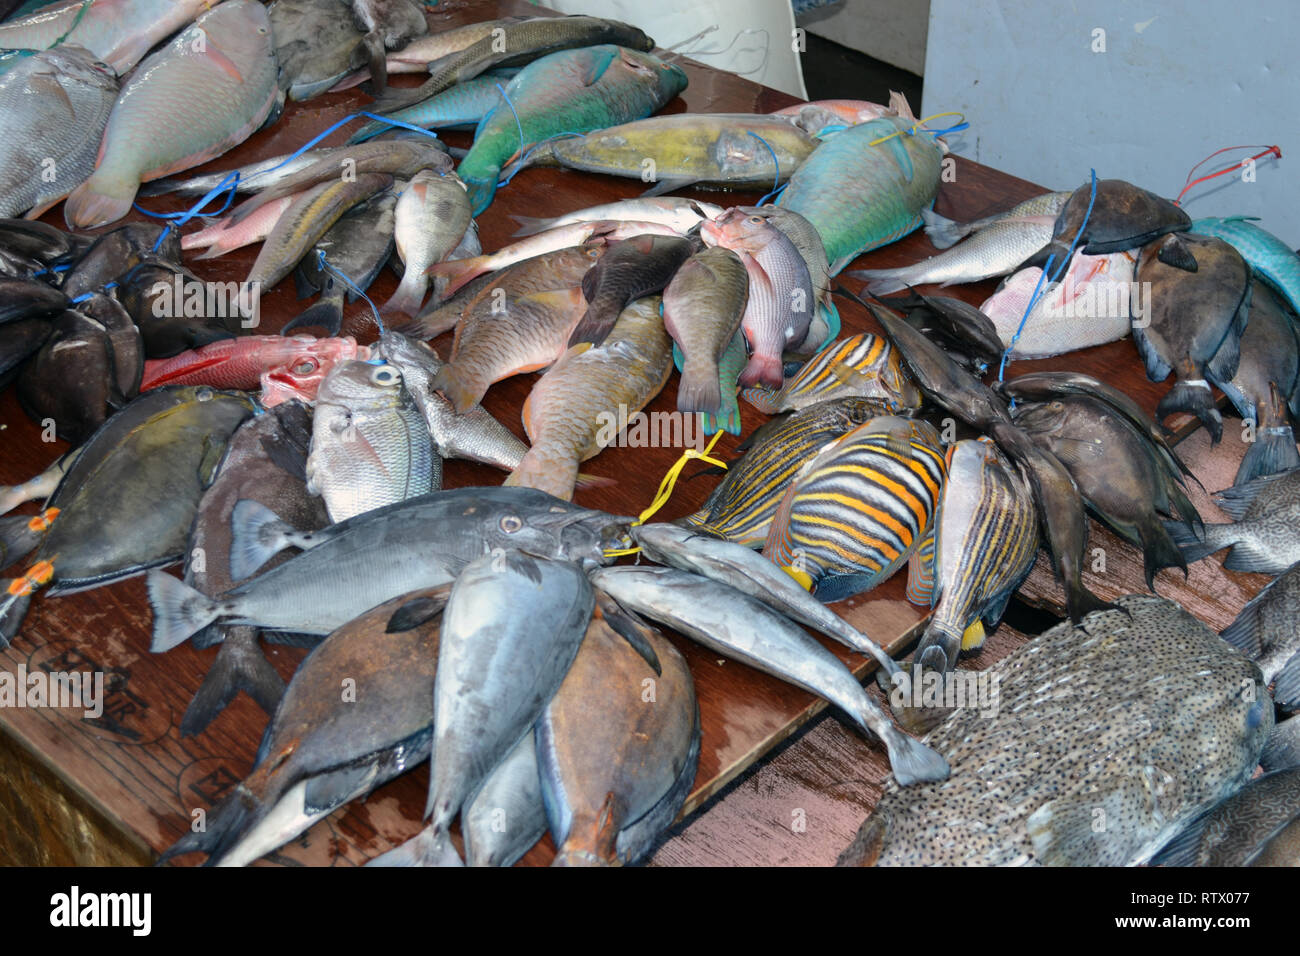 Reef fishes for sale in the Suva market, Suva, Viti Levu, Fiji, South Pacific Stock Photo